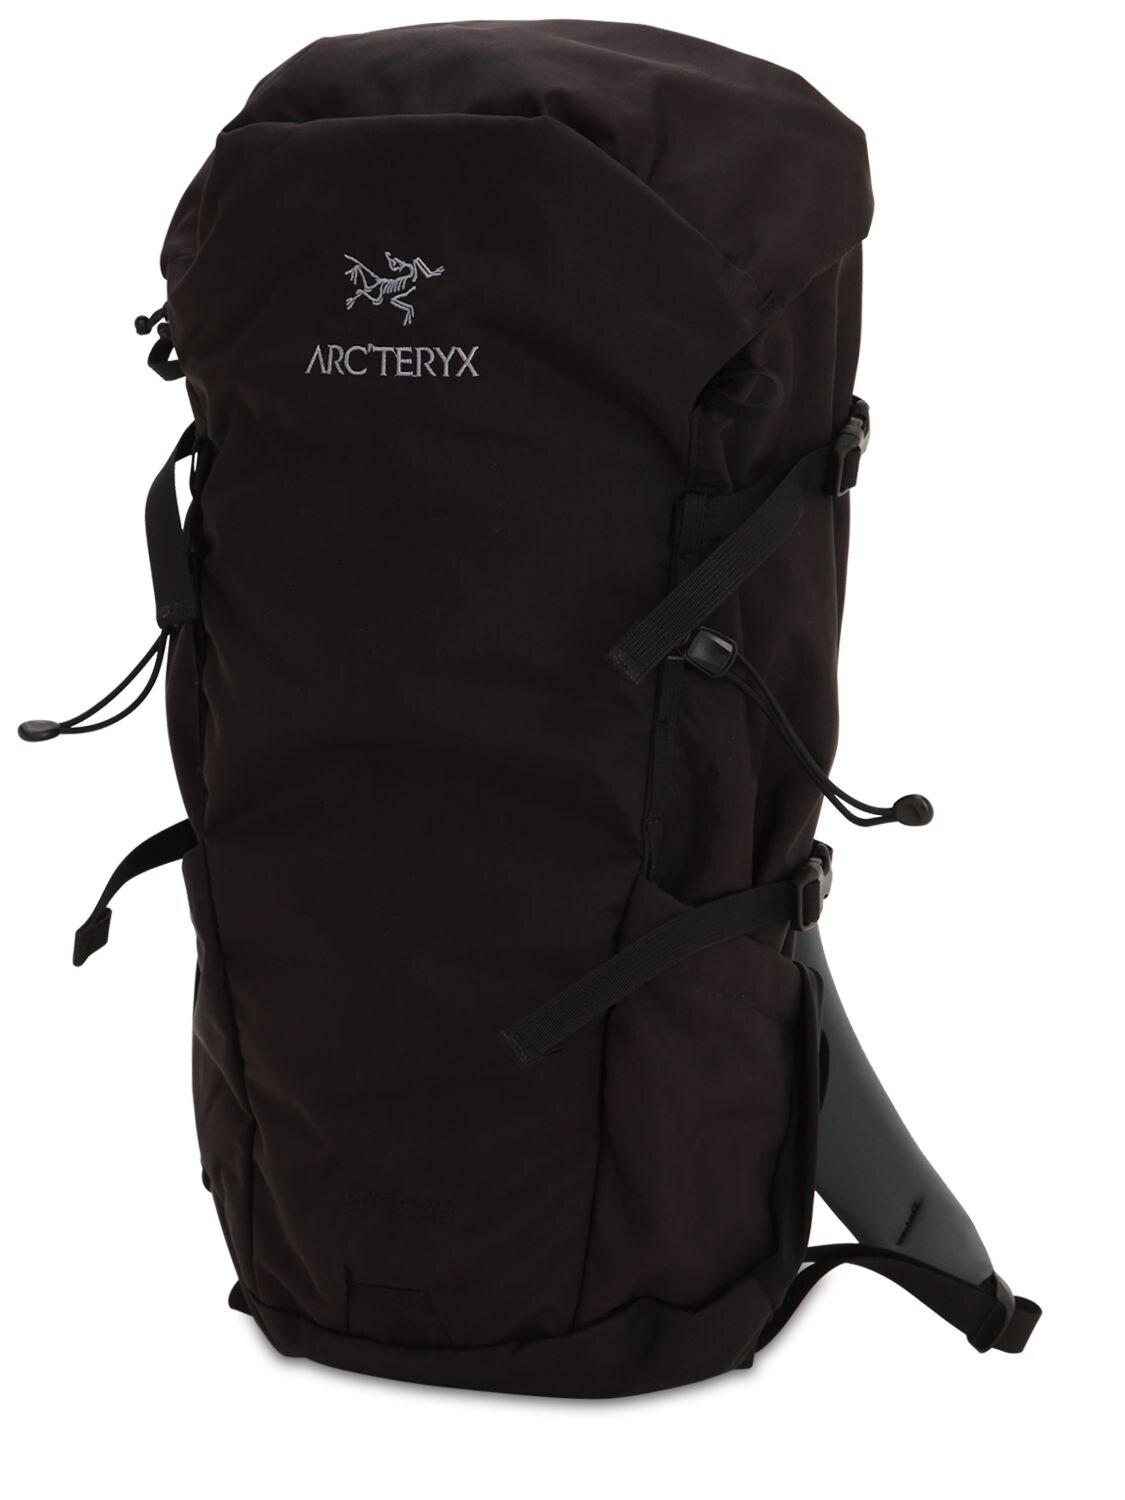 Arc'teryx 25l Brize Backpack in Black for Men - Lyst